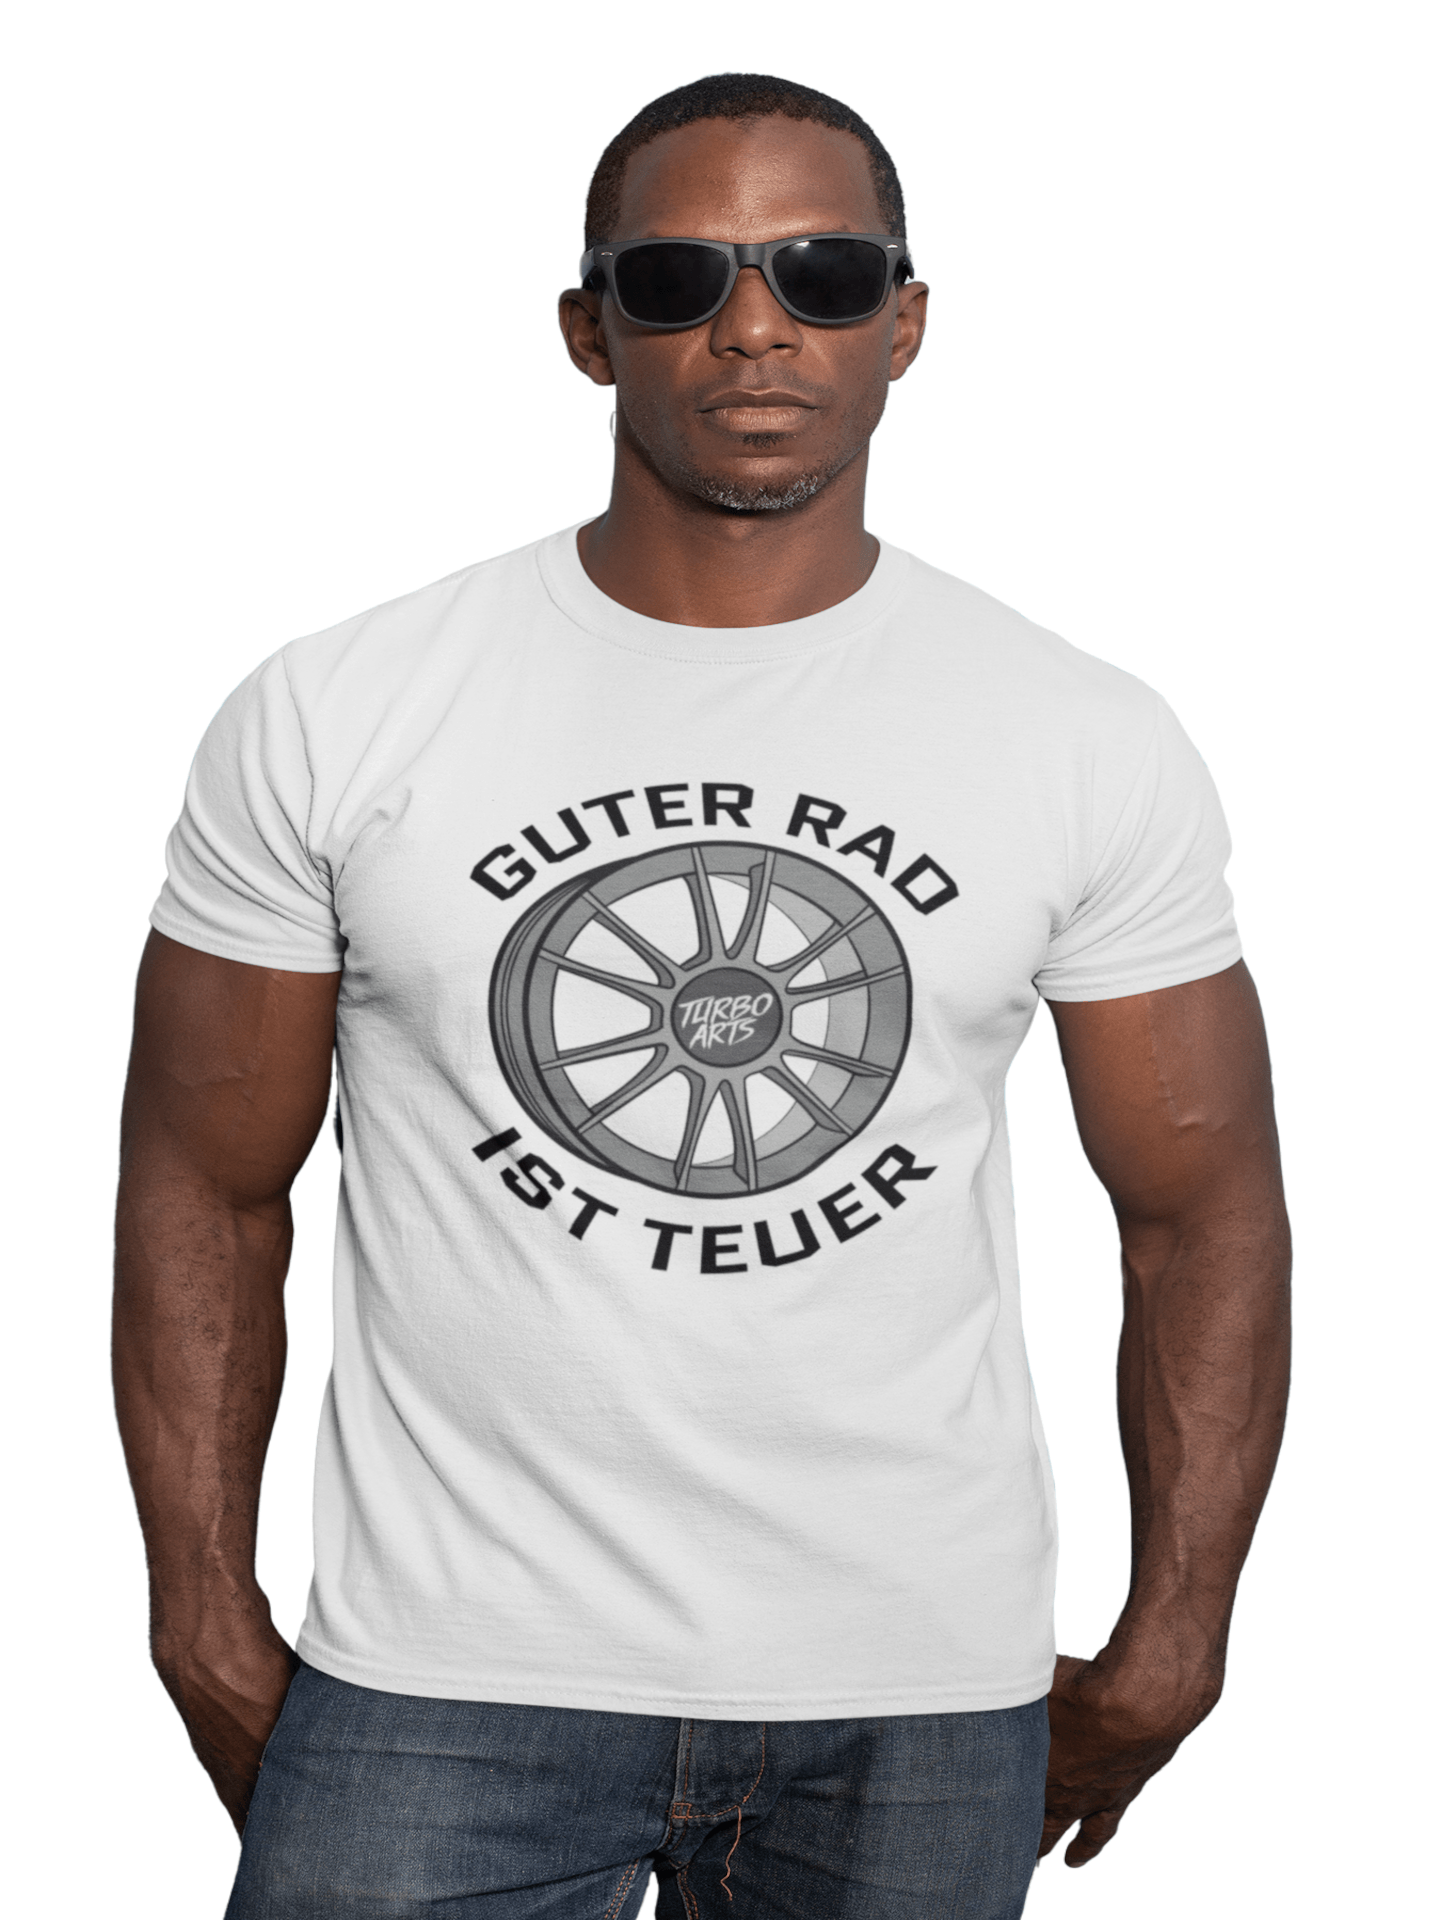 Guter Rad ist teuer - Herren T-Shirt von TurboArts